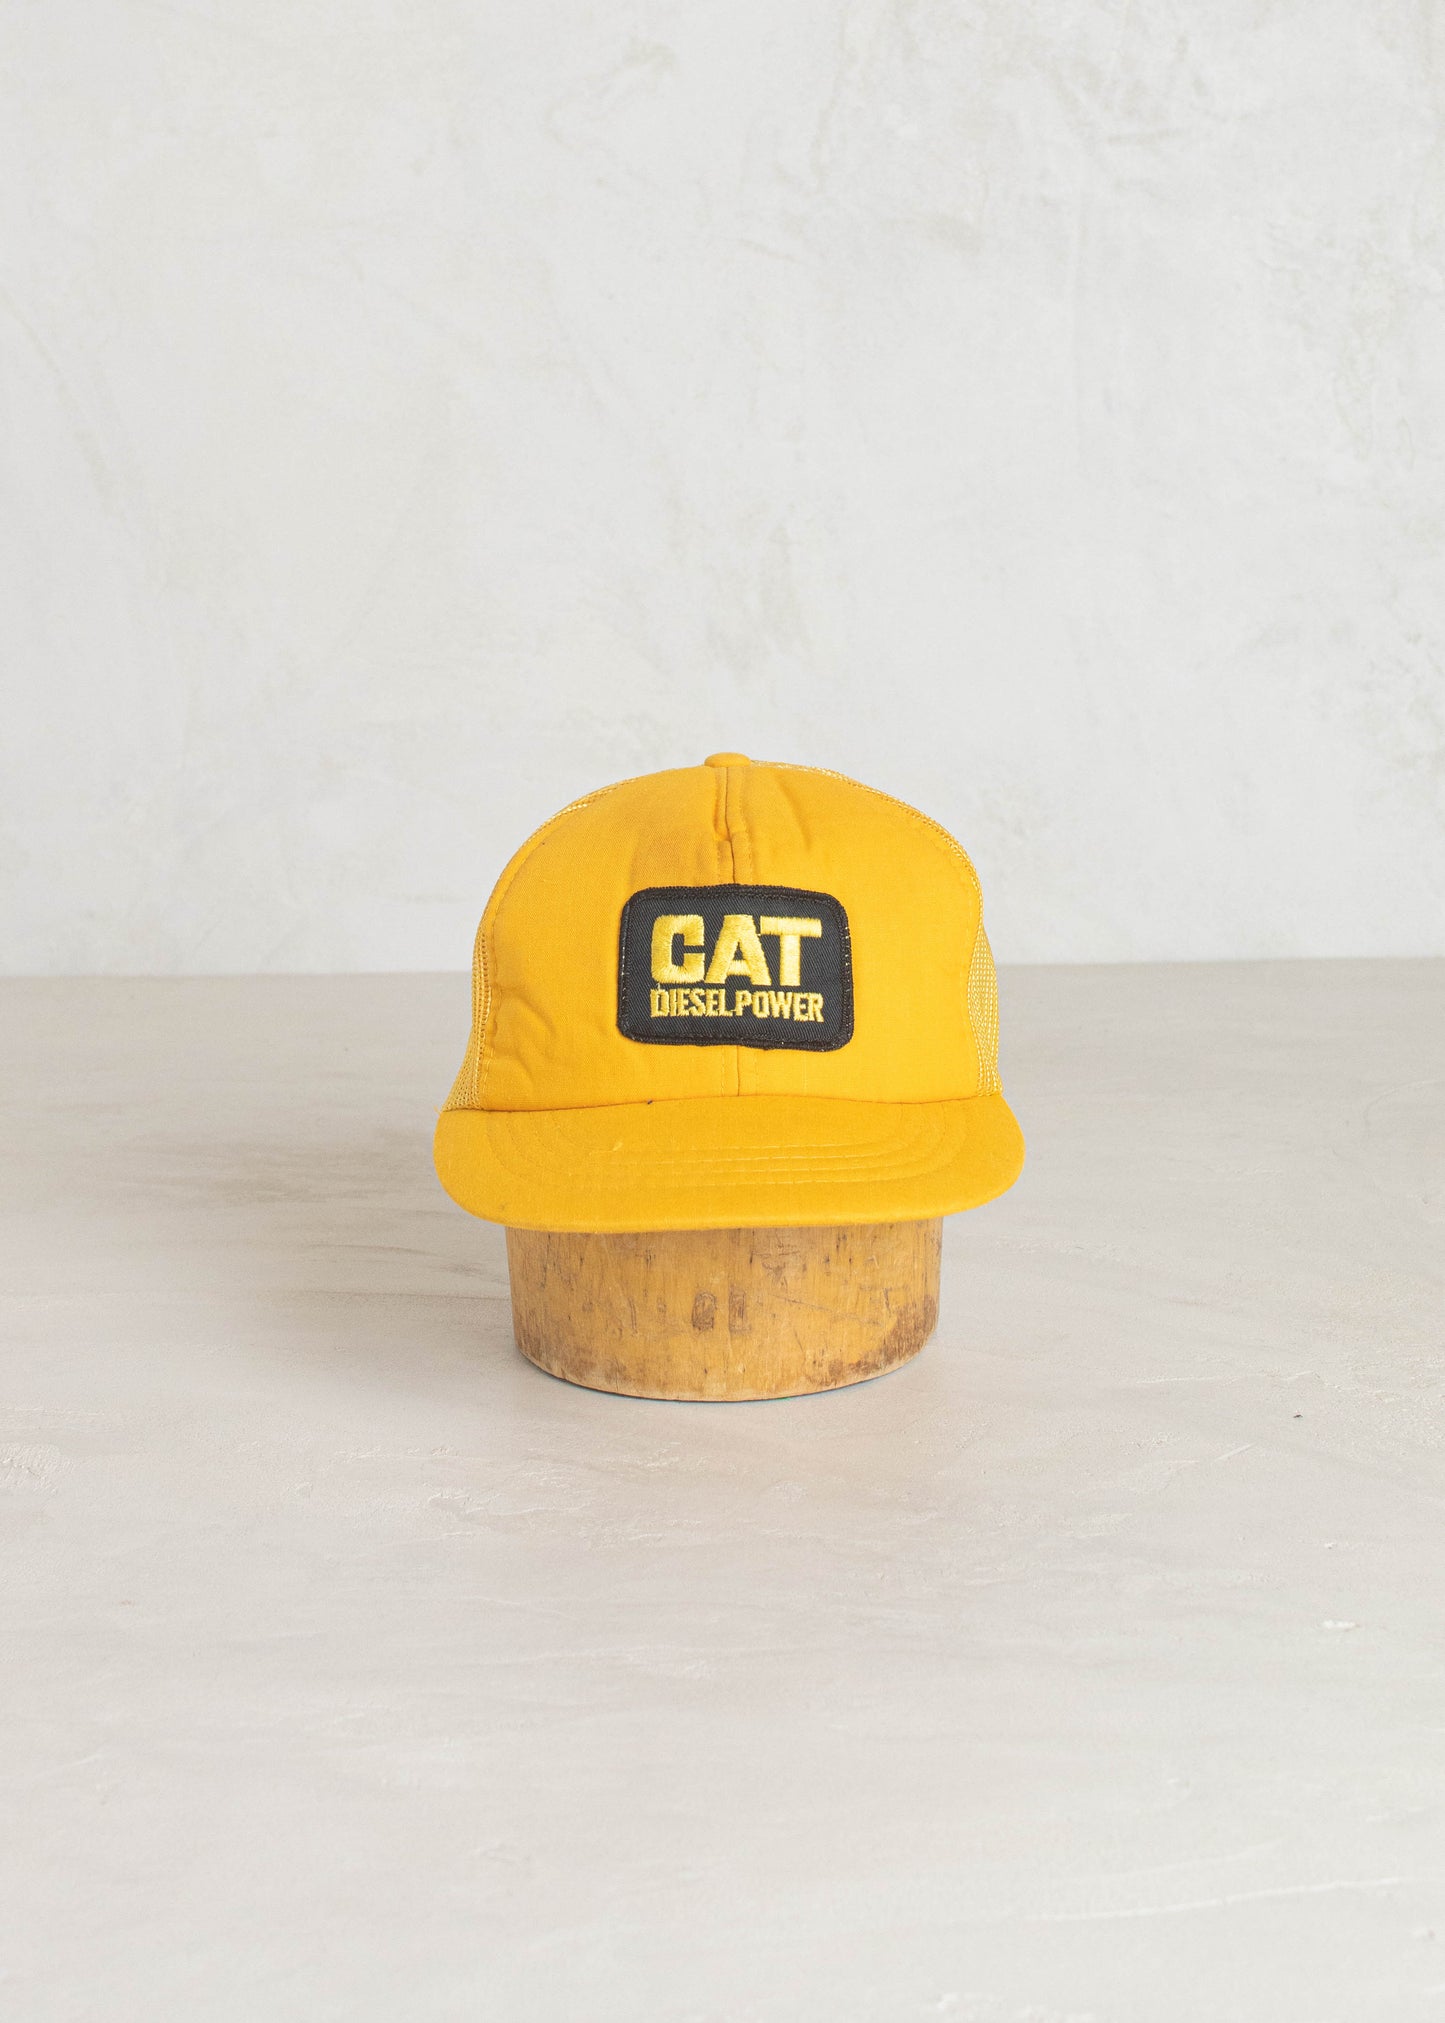 1980s CAT Diesel Power Trucker Hat